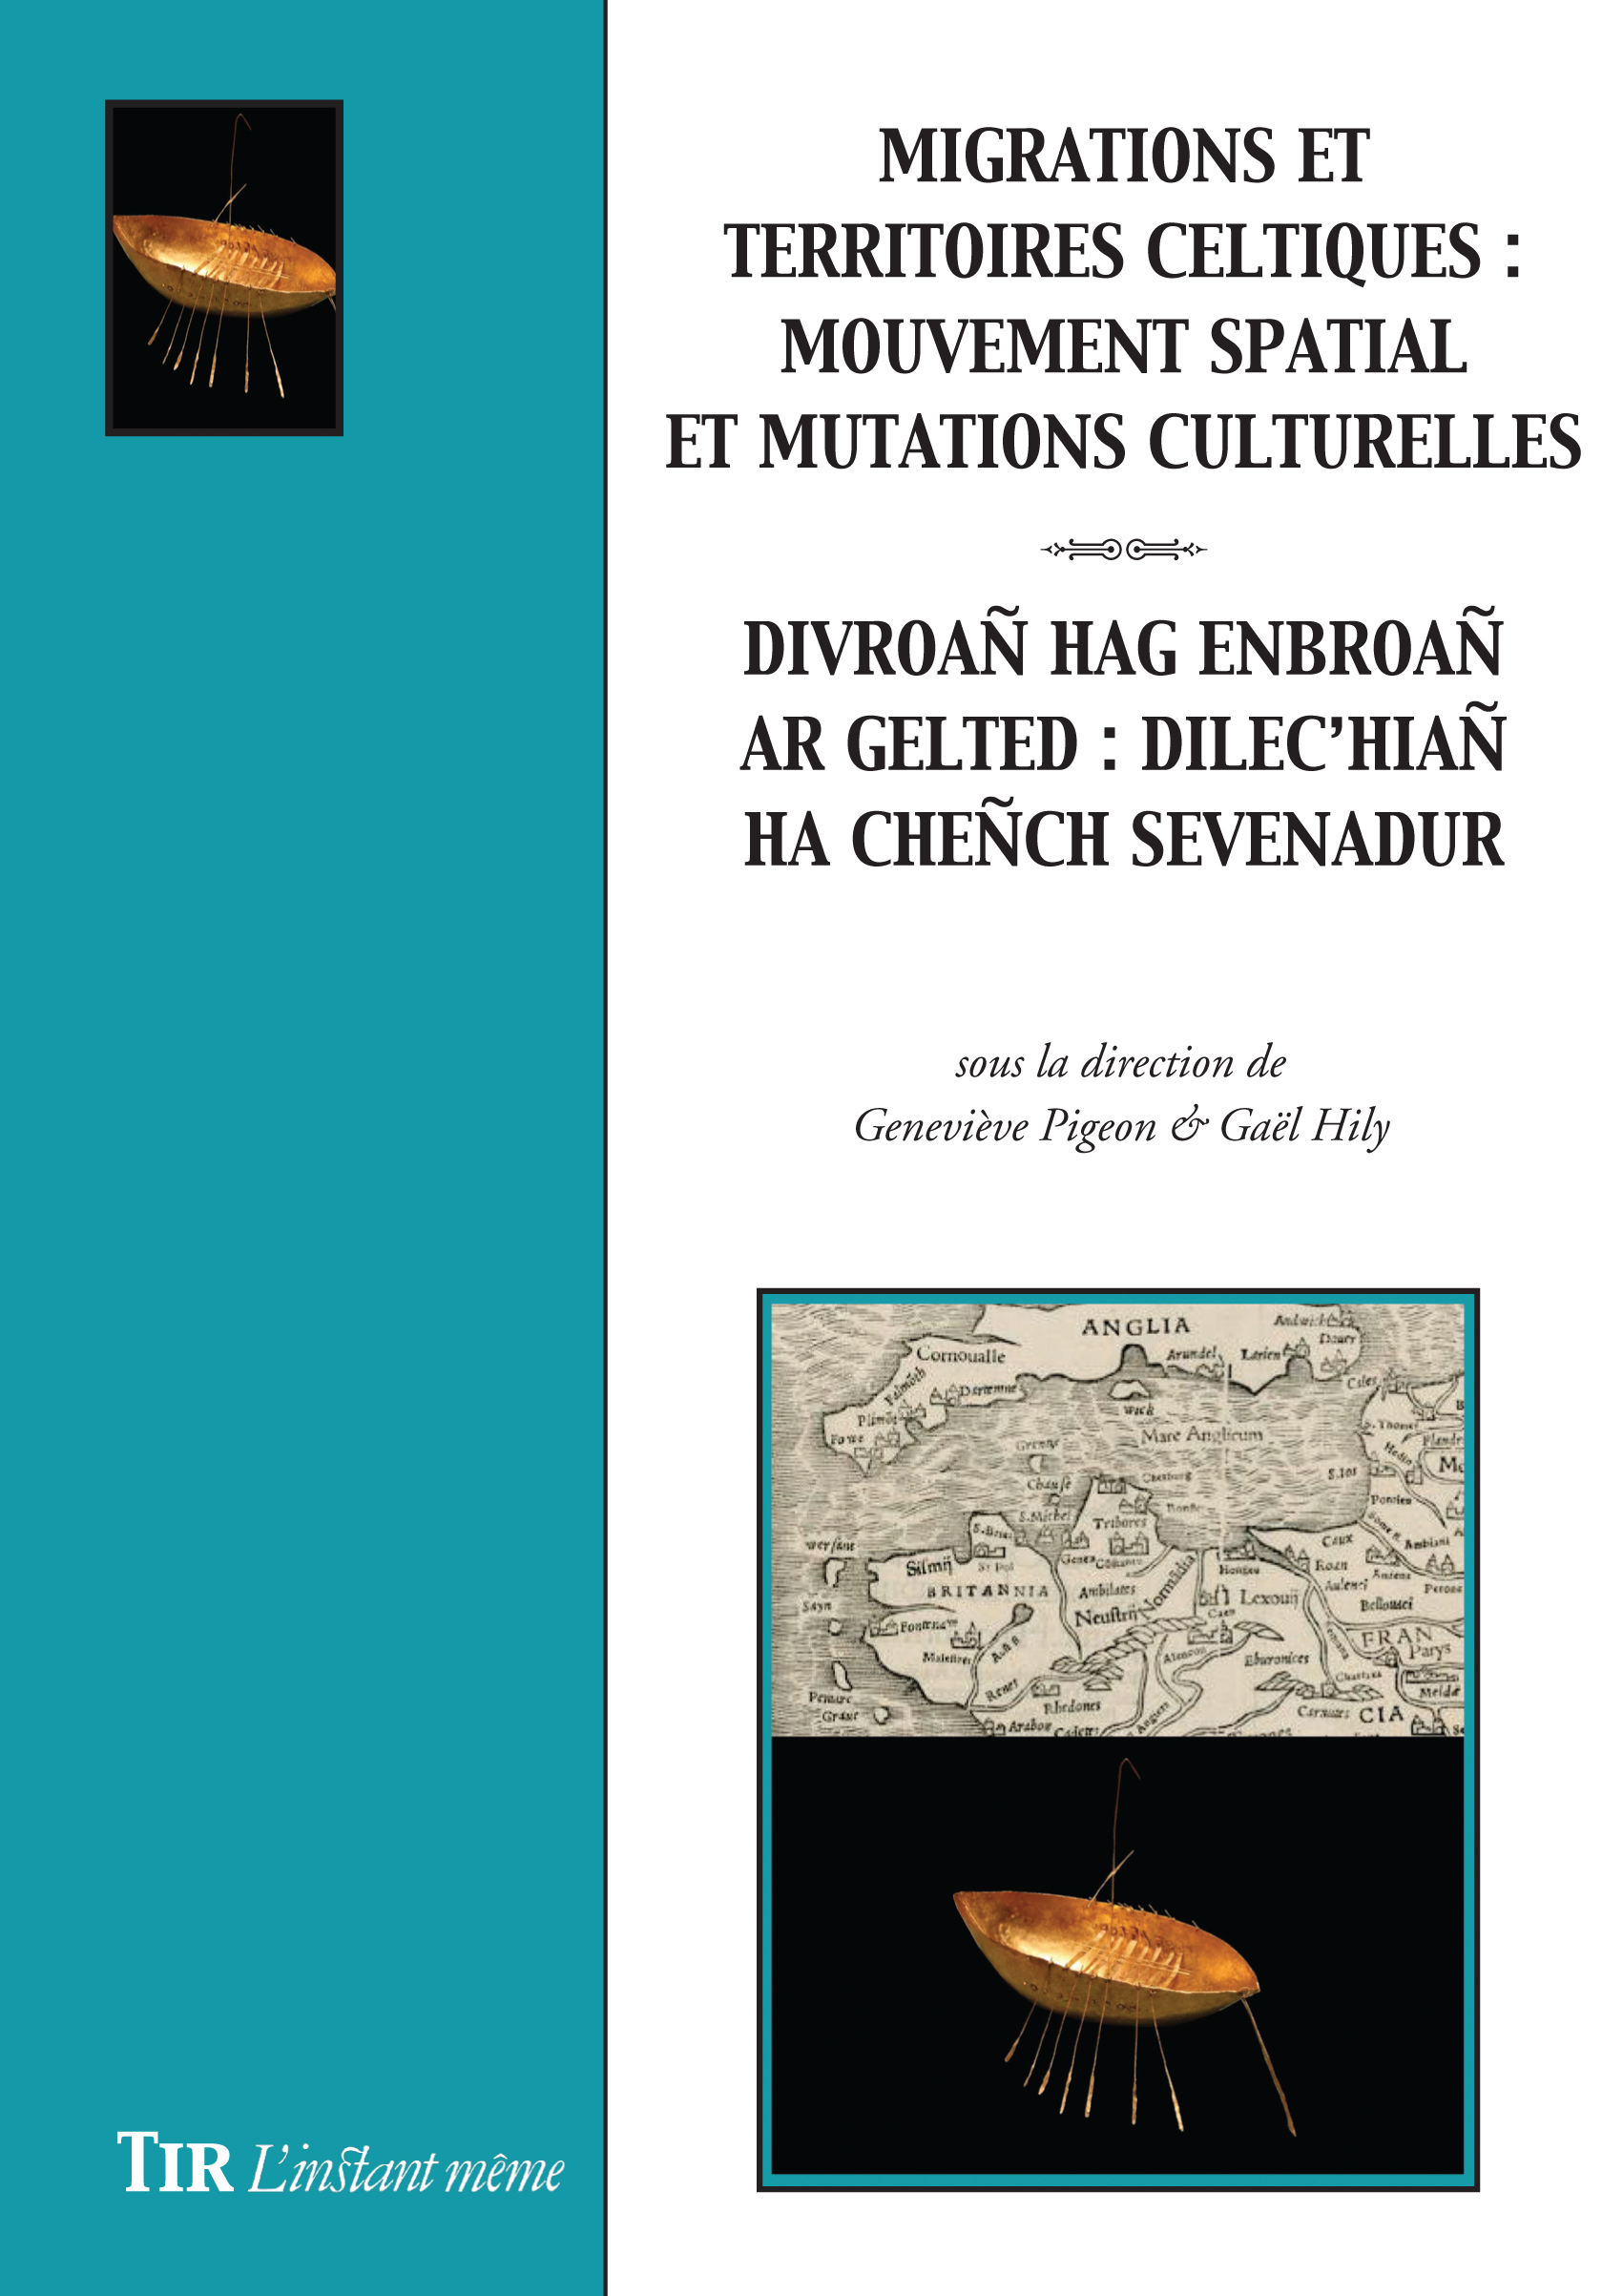 Migrations et territoires celtiques / Divroañ hag enbroañ ar Gelted, 2019, 264 p.